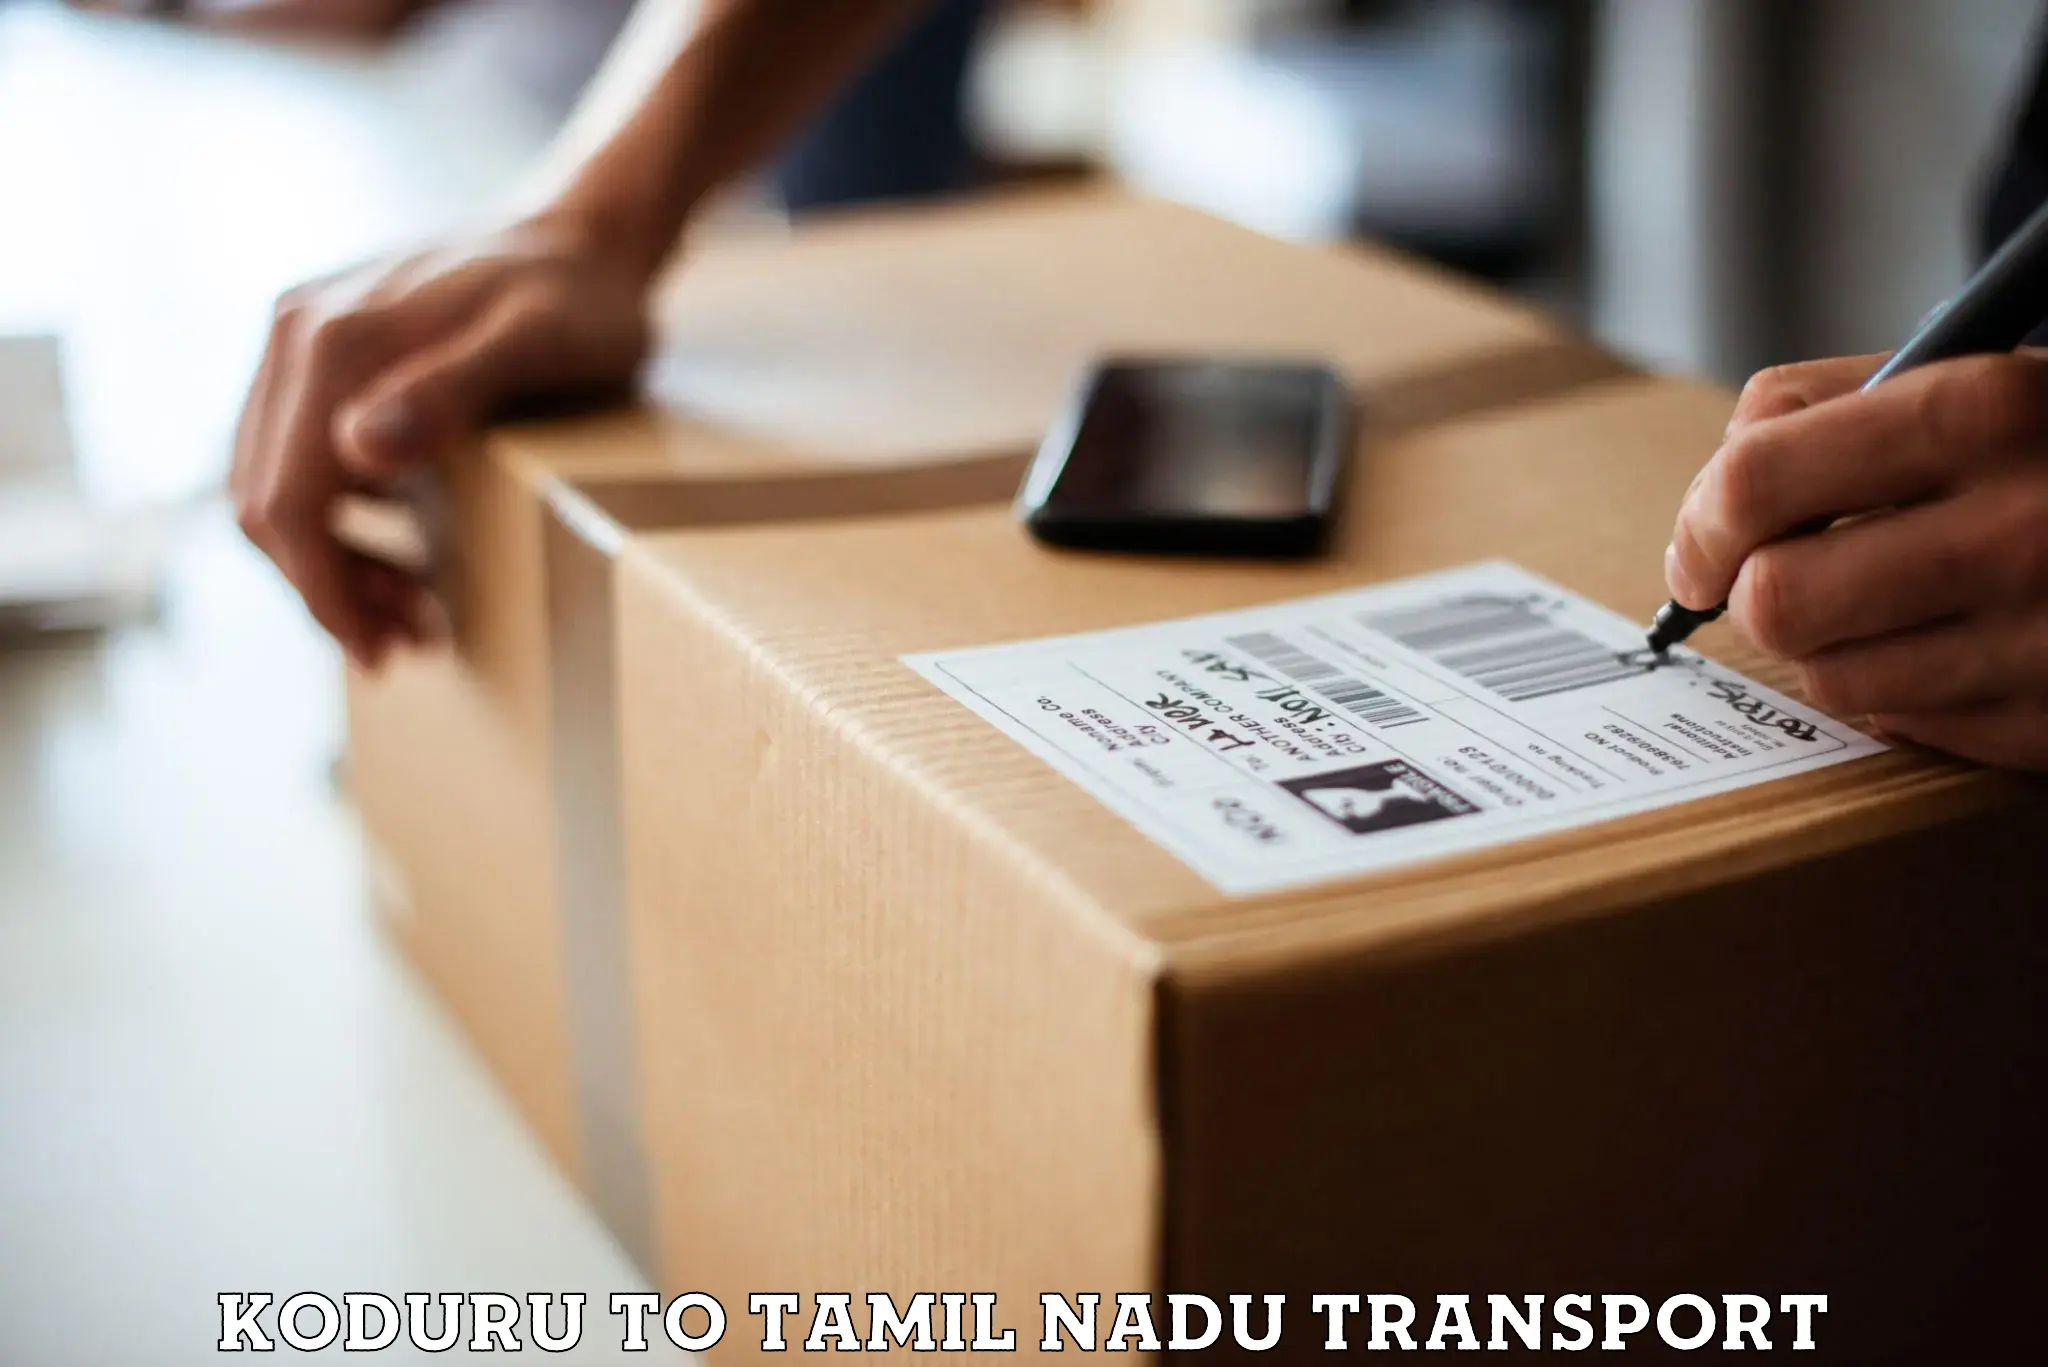 Container transportation services Koduru to Thiruvadanai